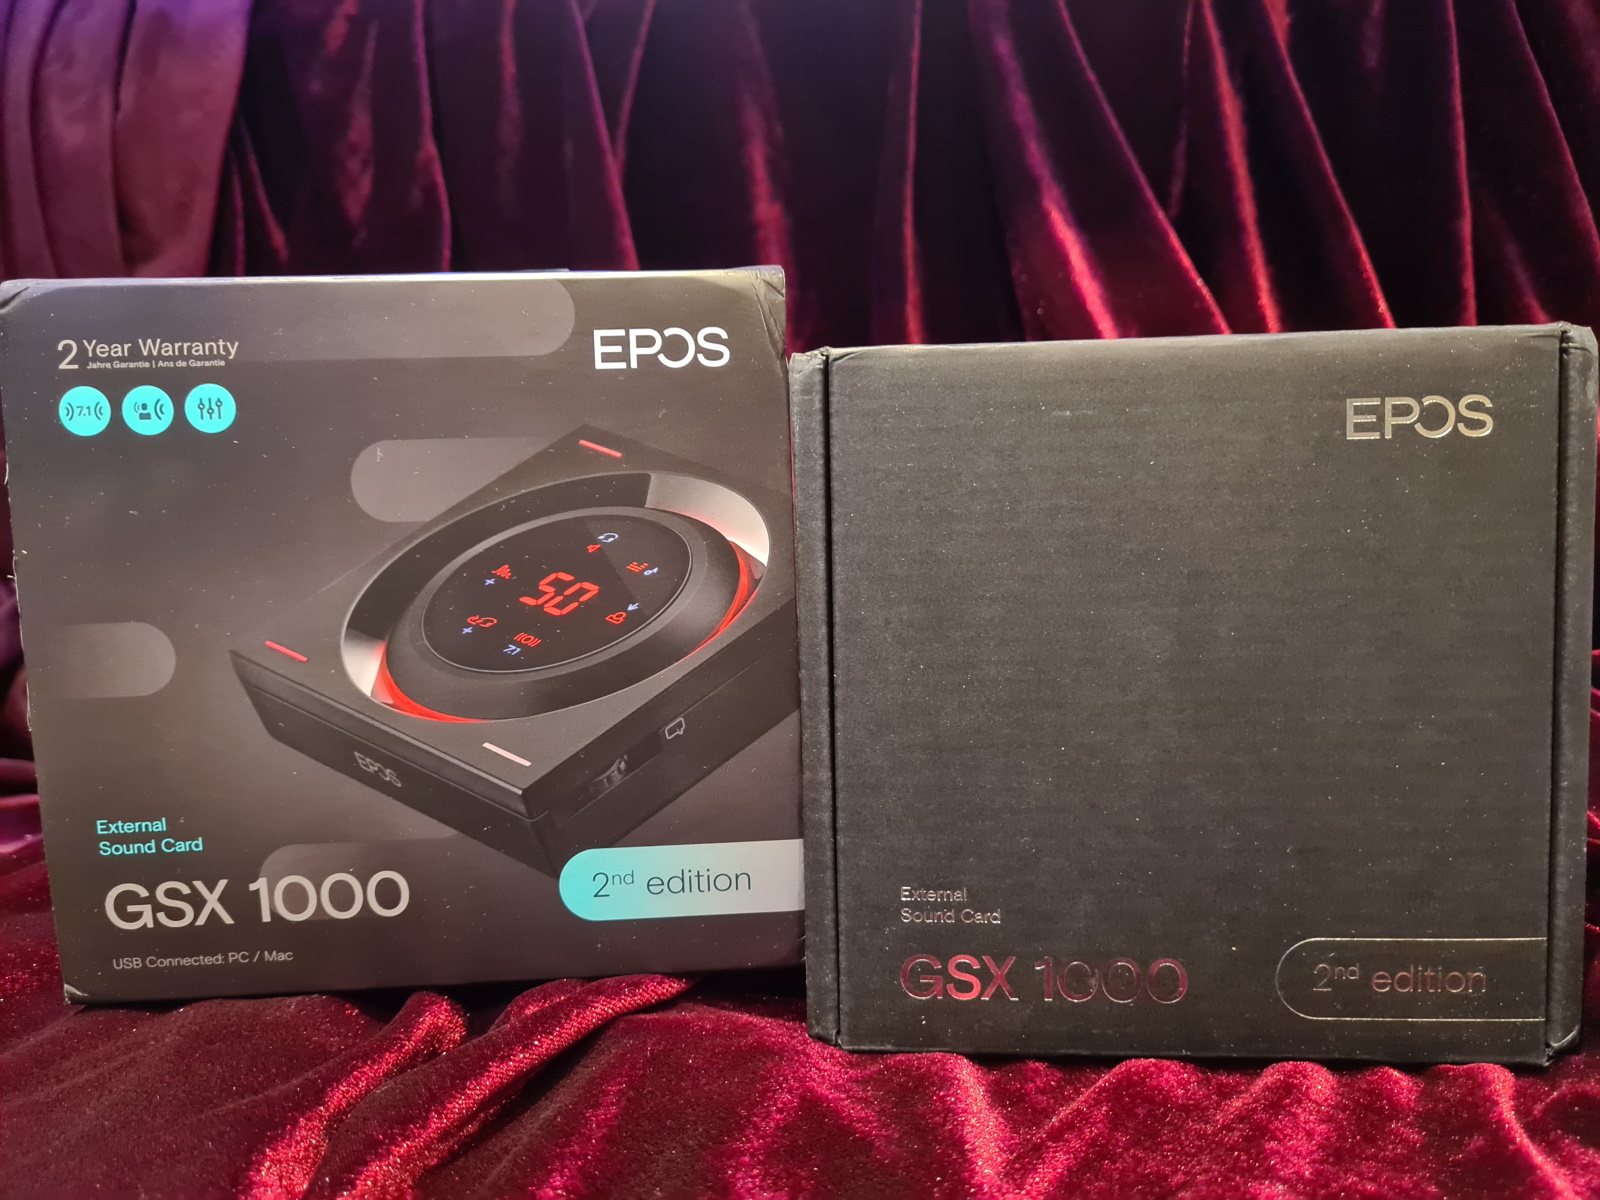 Comparer les prix : EPOS Accessoire Gaming GSX 1000